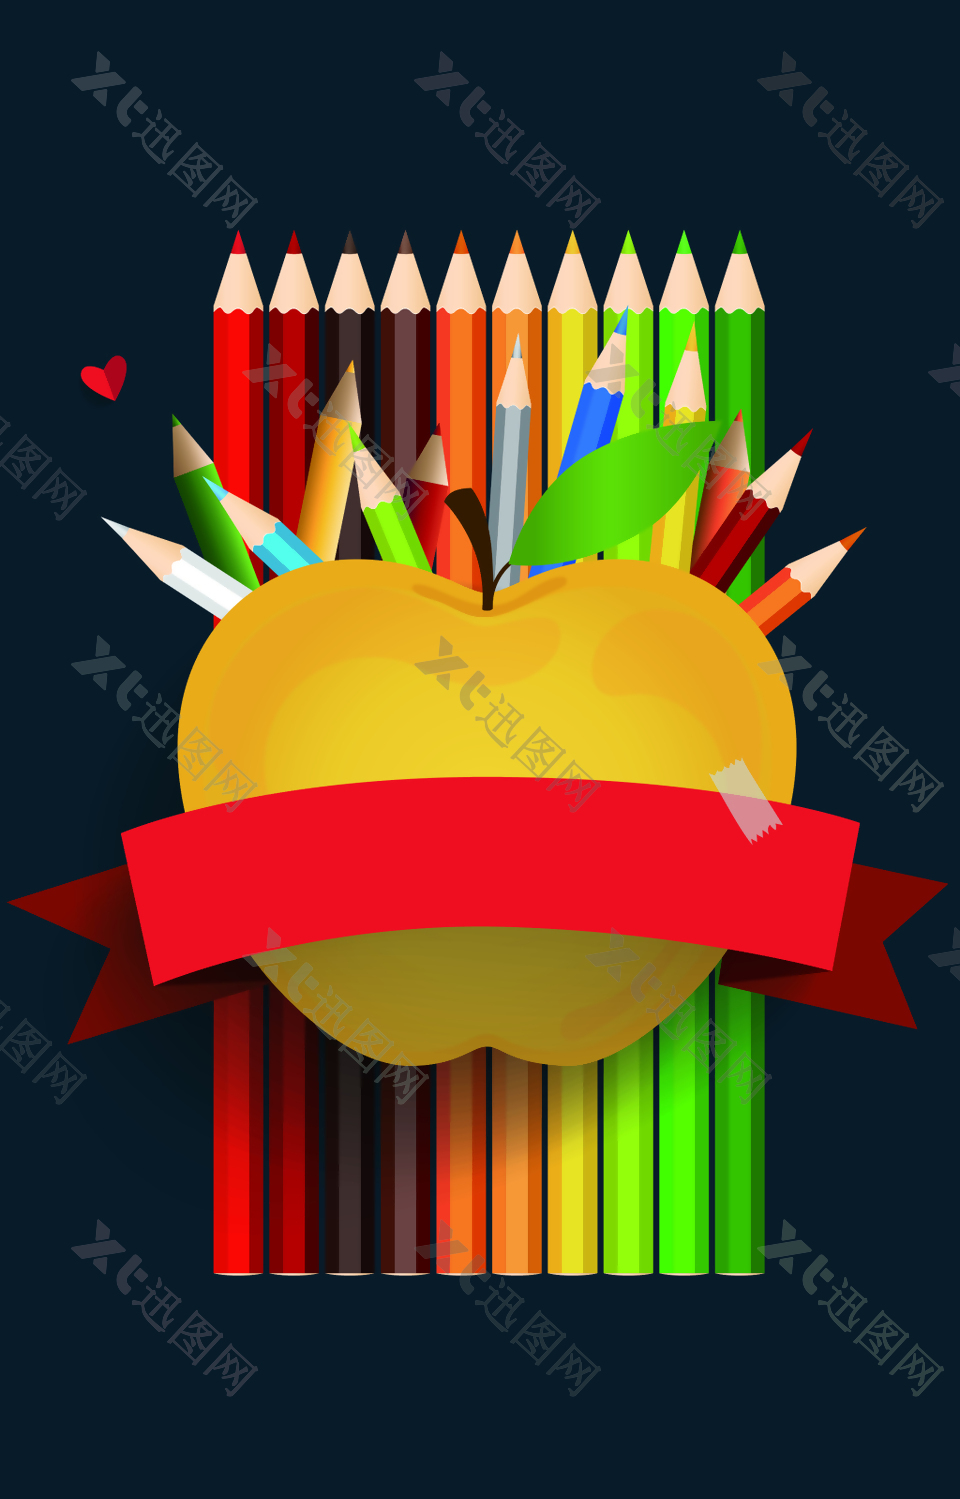 炫彩画笔和苹果背景素材